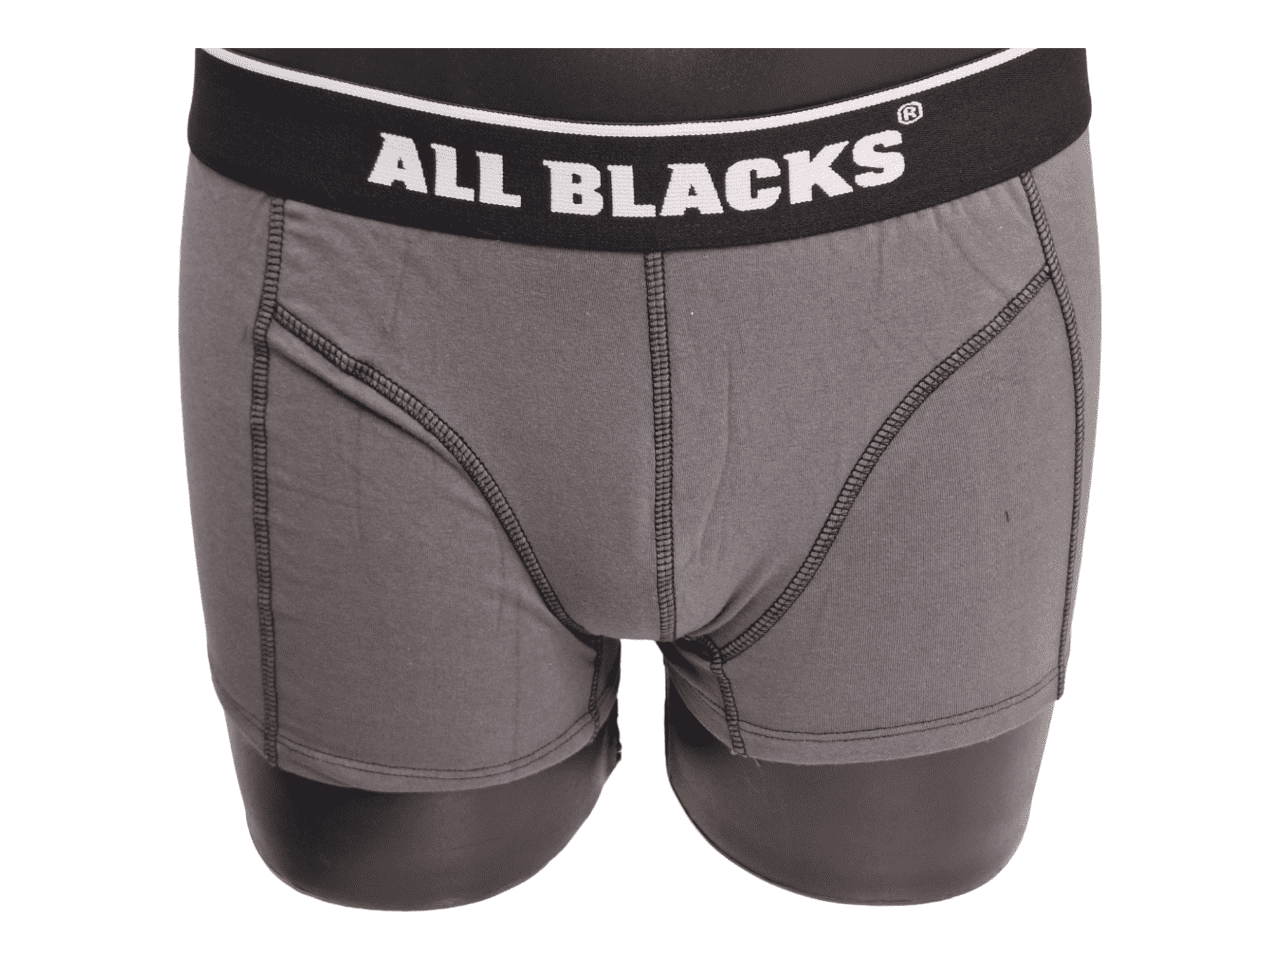 Boxers ALL BLACKS coton par lot de 3 pièces Noir, Blanc, Gris taille L